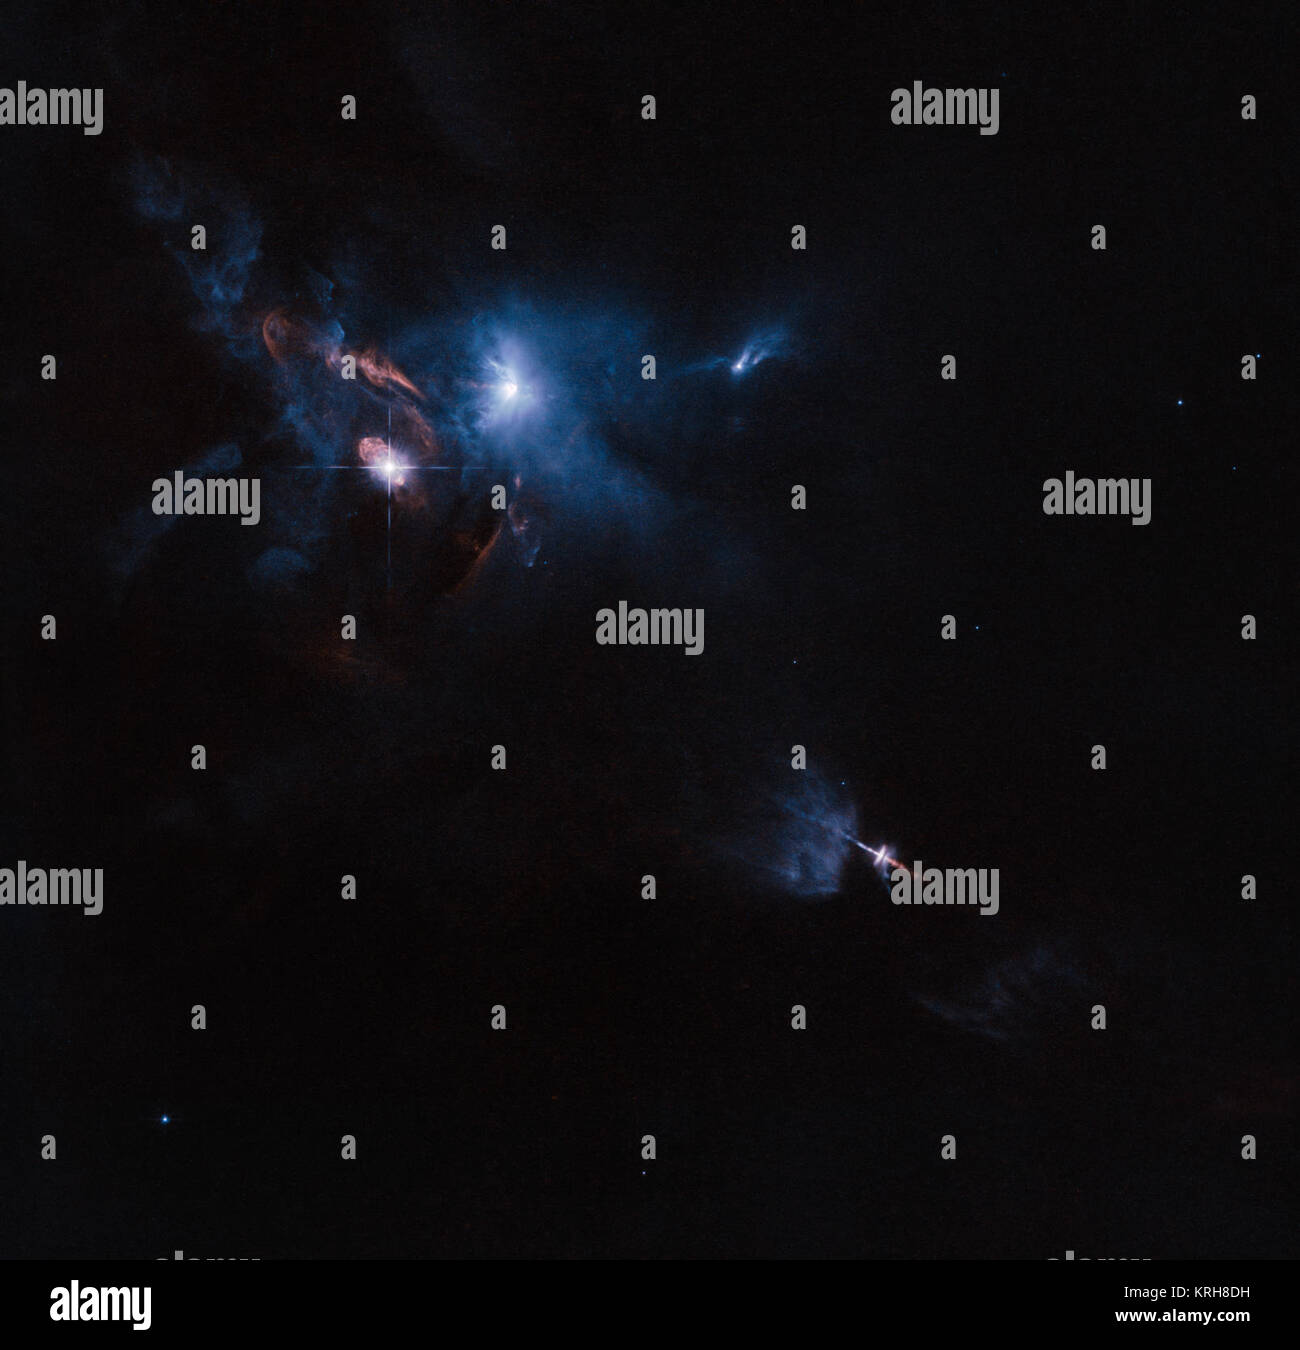 La NASA/ESA Telescopio Spaziale Hubble ha scattato una suggestiva vista di una stella multipla sistema chiamato XZ Tauri, il suo prossimo HL Tauri e molti giovani nelle vicinanze di oggetti stellari. XZ Tauri sta soffiando una bolla calda di gas nello spazio circostante, che è riempita con un luminoso e bello grumi che sono emettitori di venti forti e i getti. Questi oggetti si illuminano la regione, la creazione di una vera e propria scena drammatica. Le catture di Hubble getti, bolle, lampi di luce nel toro (15726704895) Foto Stock